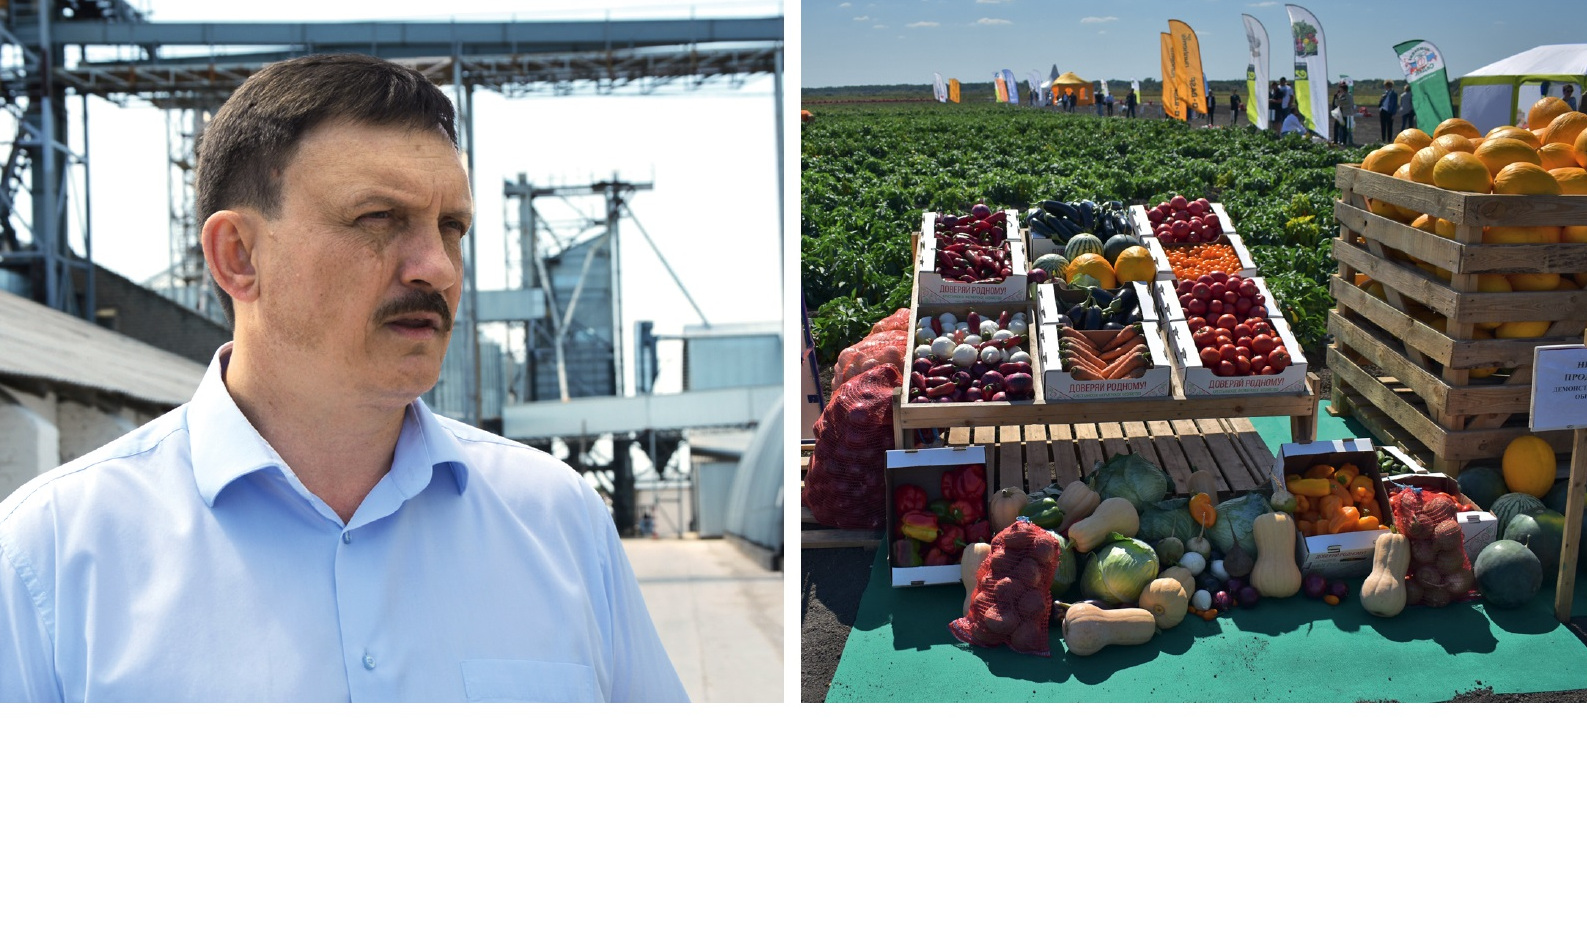 Василий Иванов: «Аграрии готовы экспортировать продукцию переработки с высокой добавленной стоимостью»